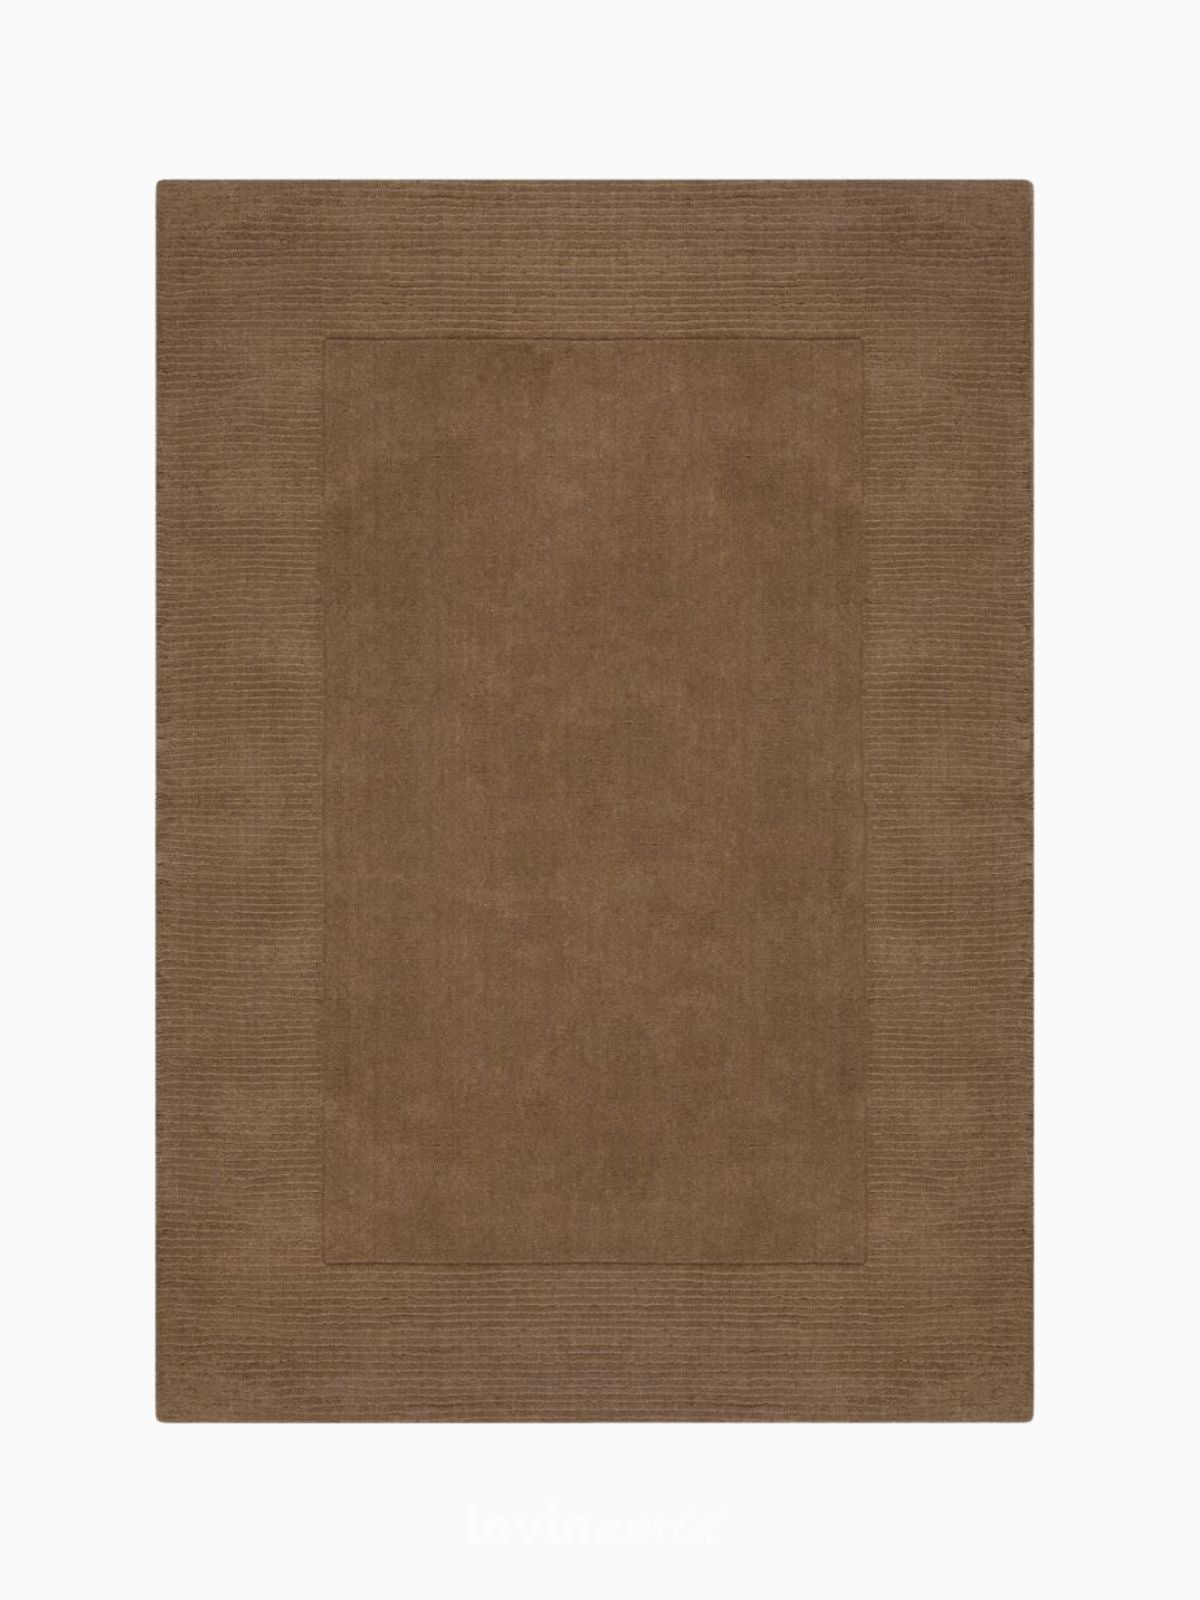 Tappeto di design Textured Wool Border in lana, colore marrone-1